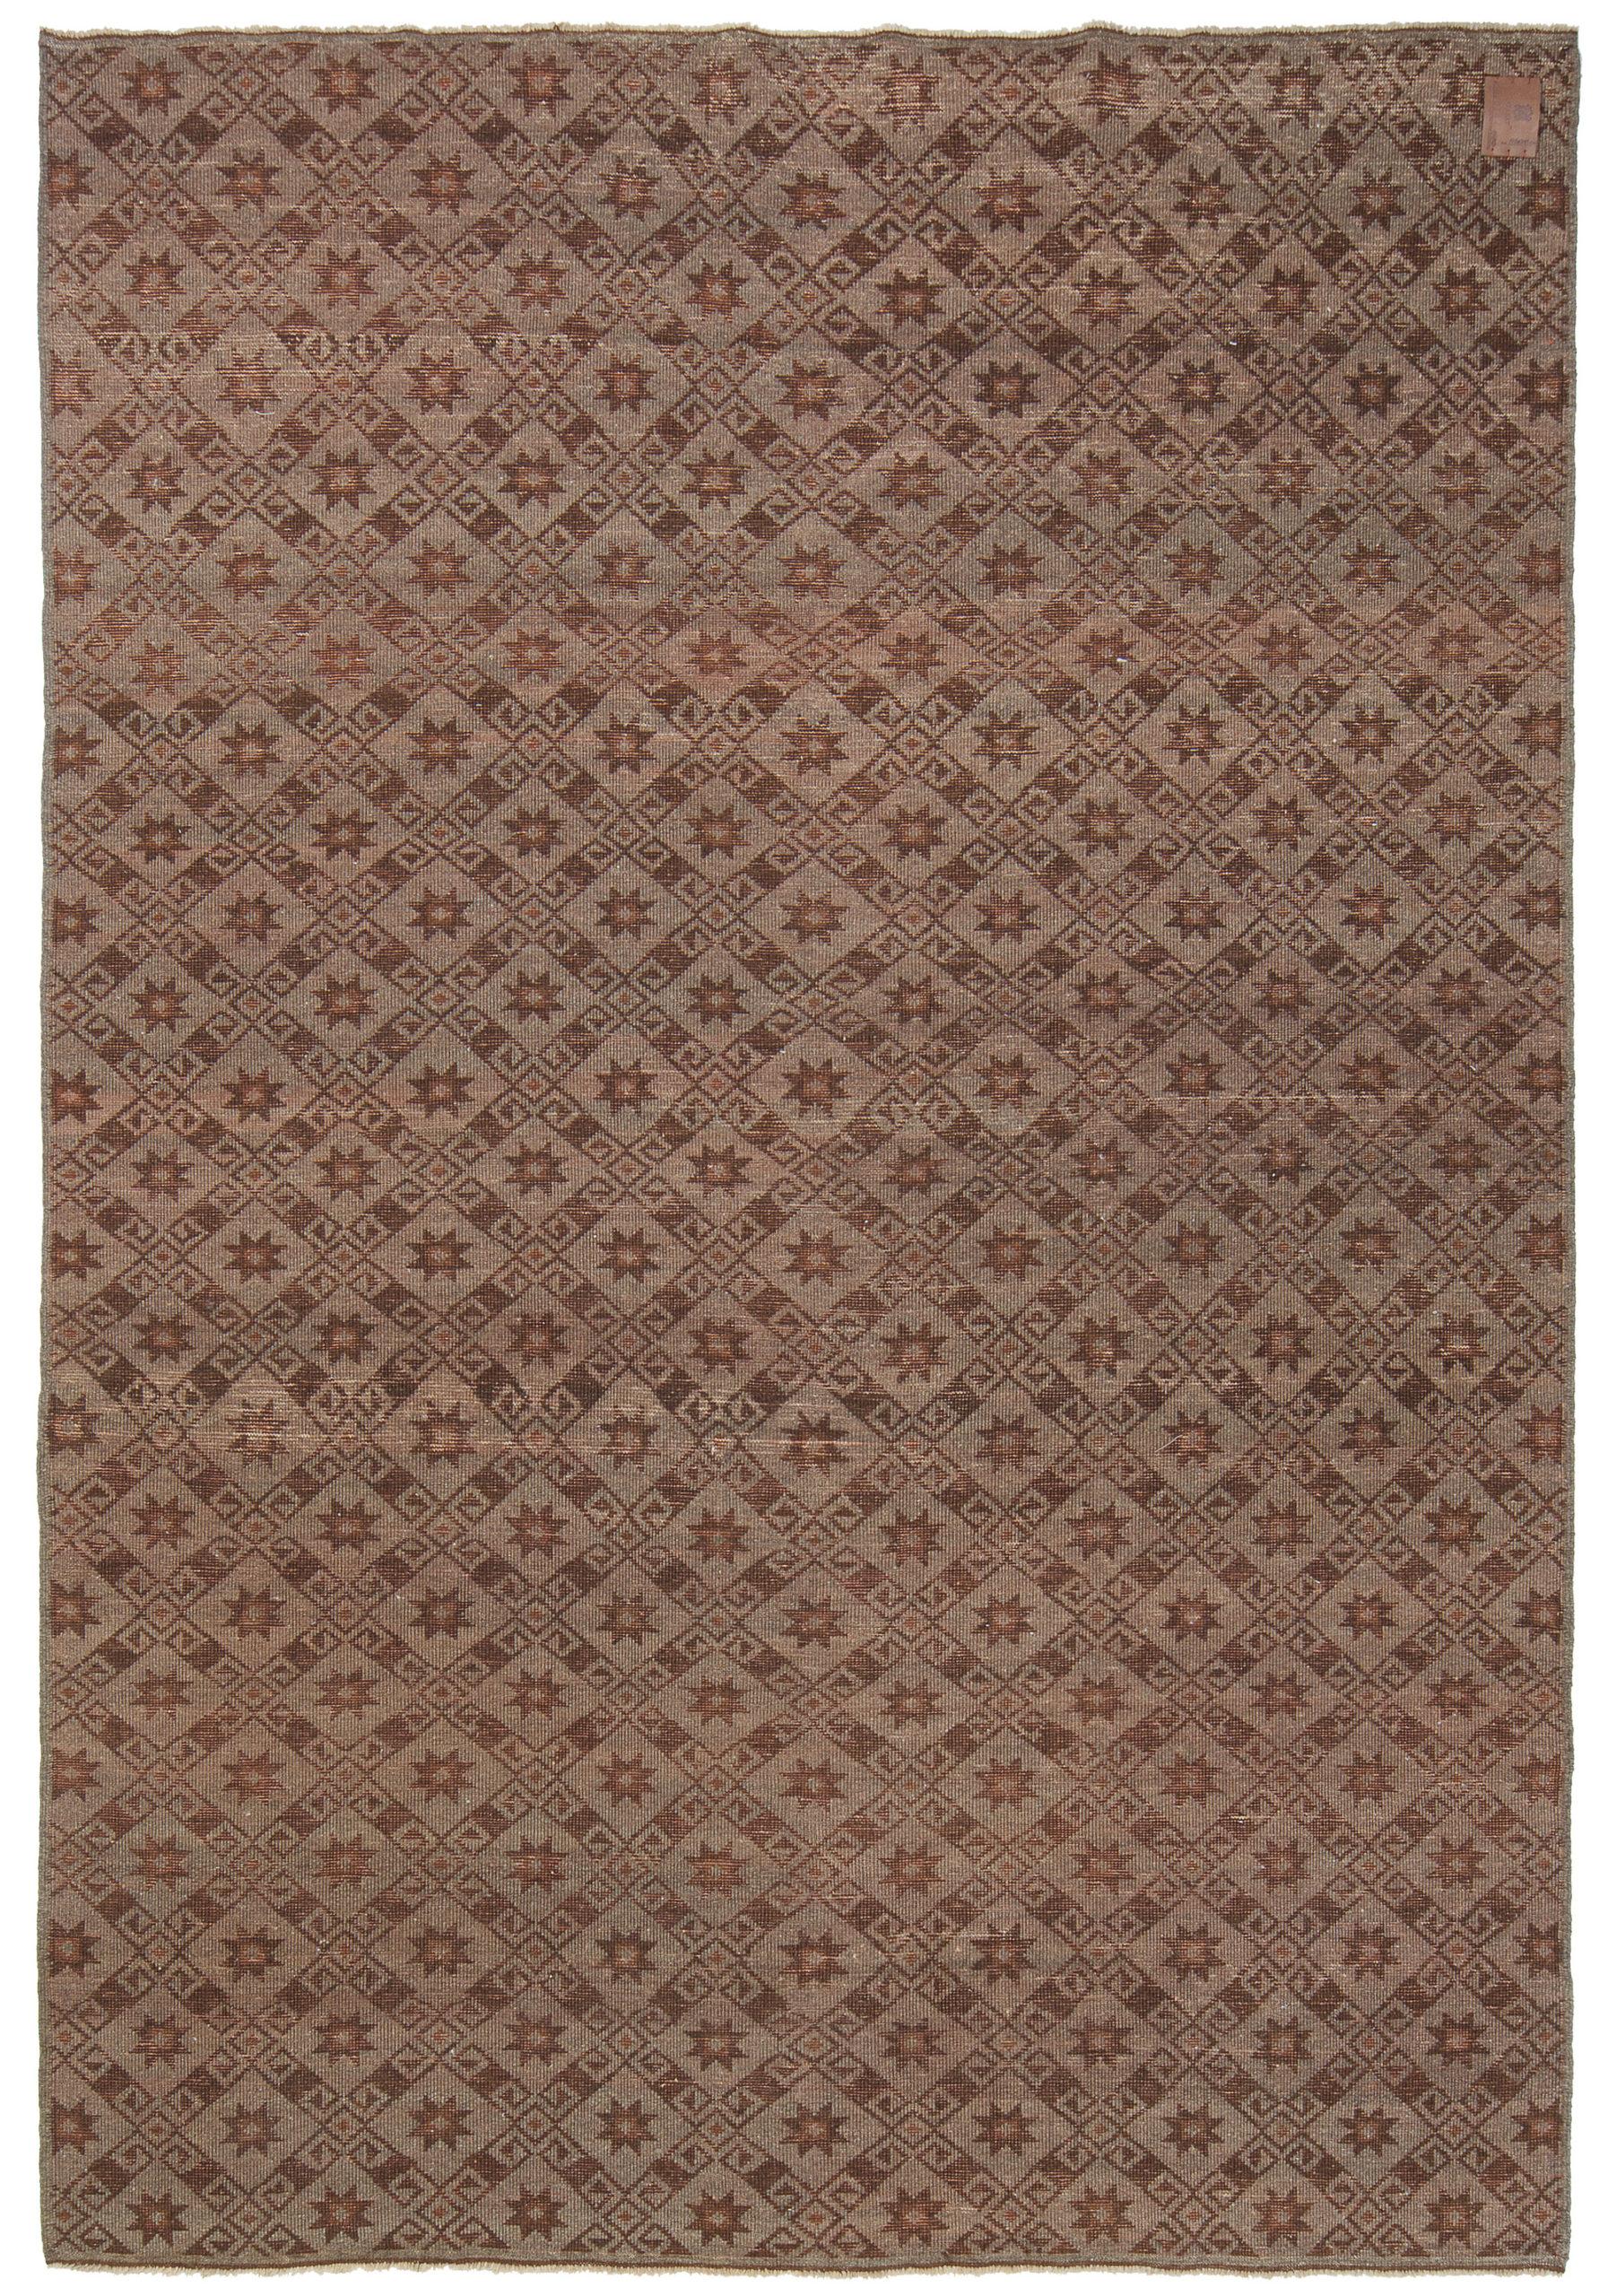 Die Quelle des Teppichs stammt aus dem Buch Orient Stars Collection, Anatolian Tribal Rugs 1050-1750, Michael Franses, Hali Publications Ltd, 2021 fig.24. Dieser Teppich aus dem 13. Jahrhundert stammt wahrscheinlich aus der Region Konya,